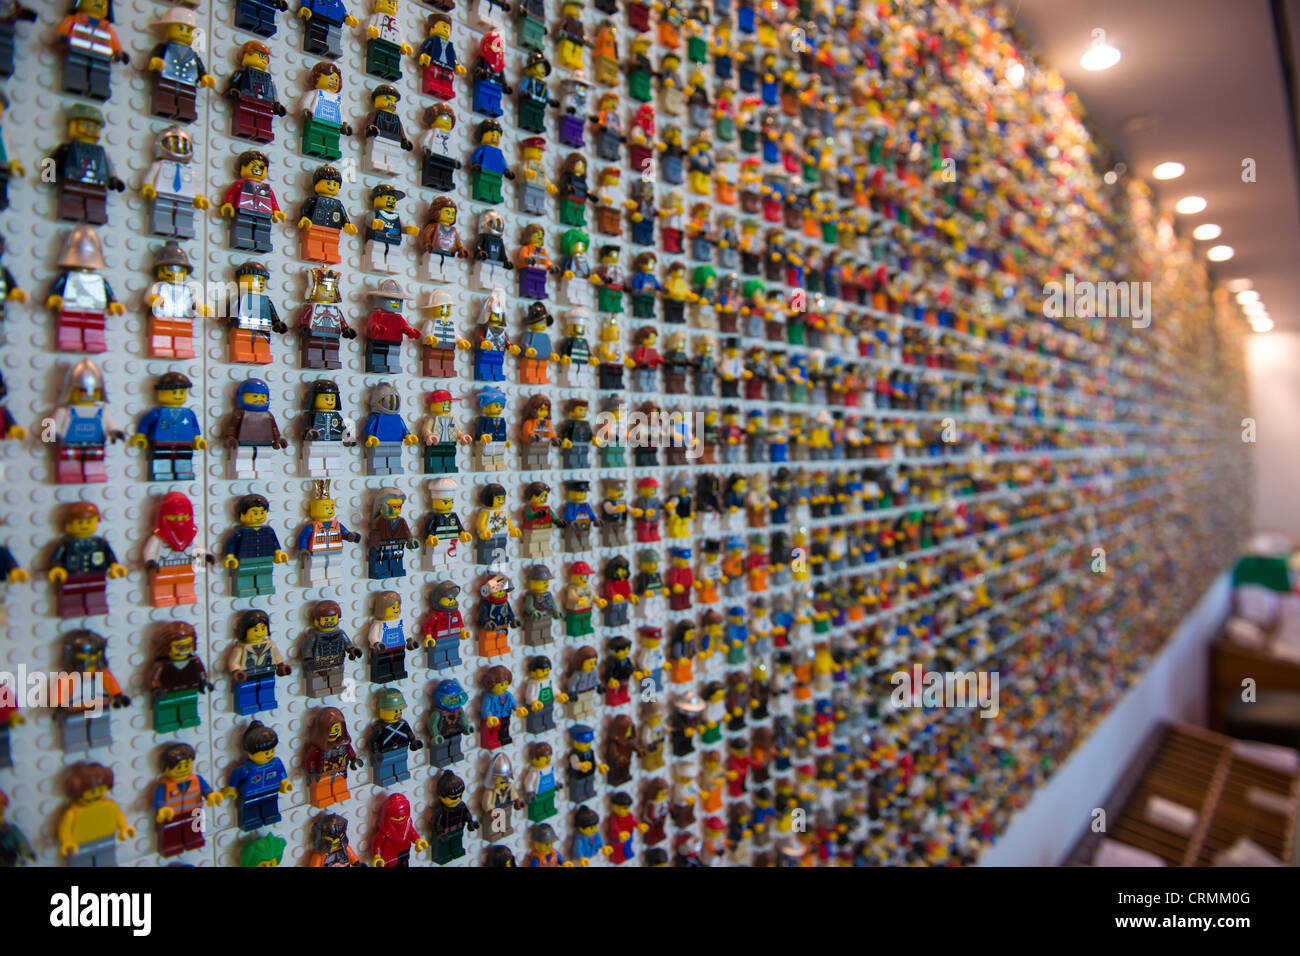 Les chiffres Lego à la réception de l'hôtel Legoland, le parc Legoland, à Billund, Danemark Banque D'Images